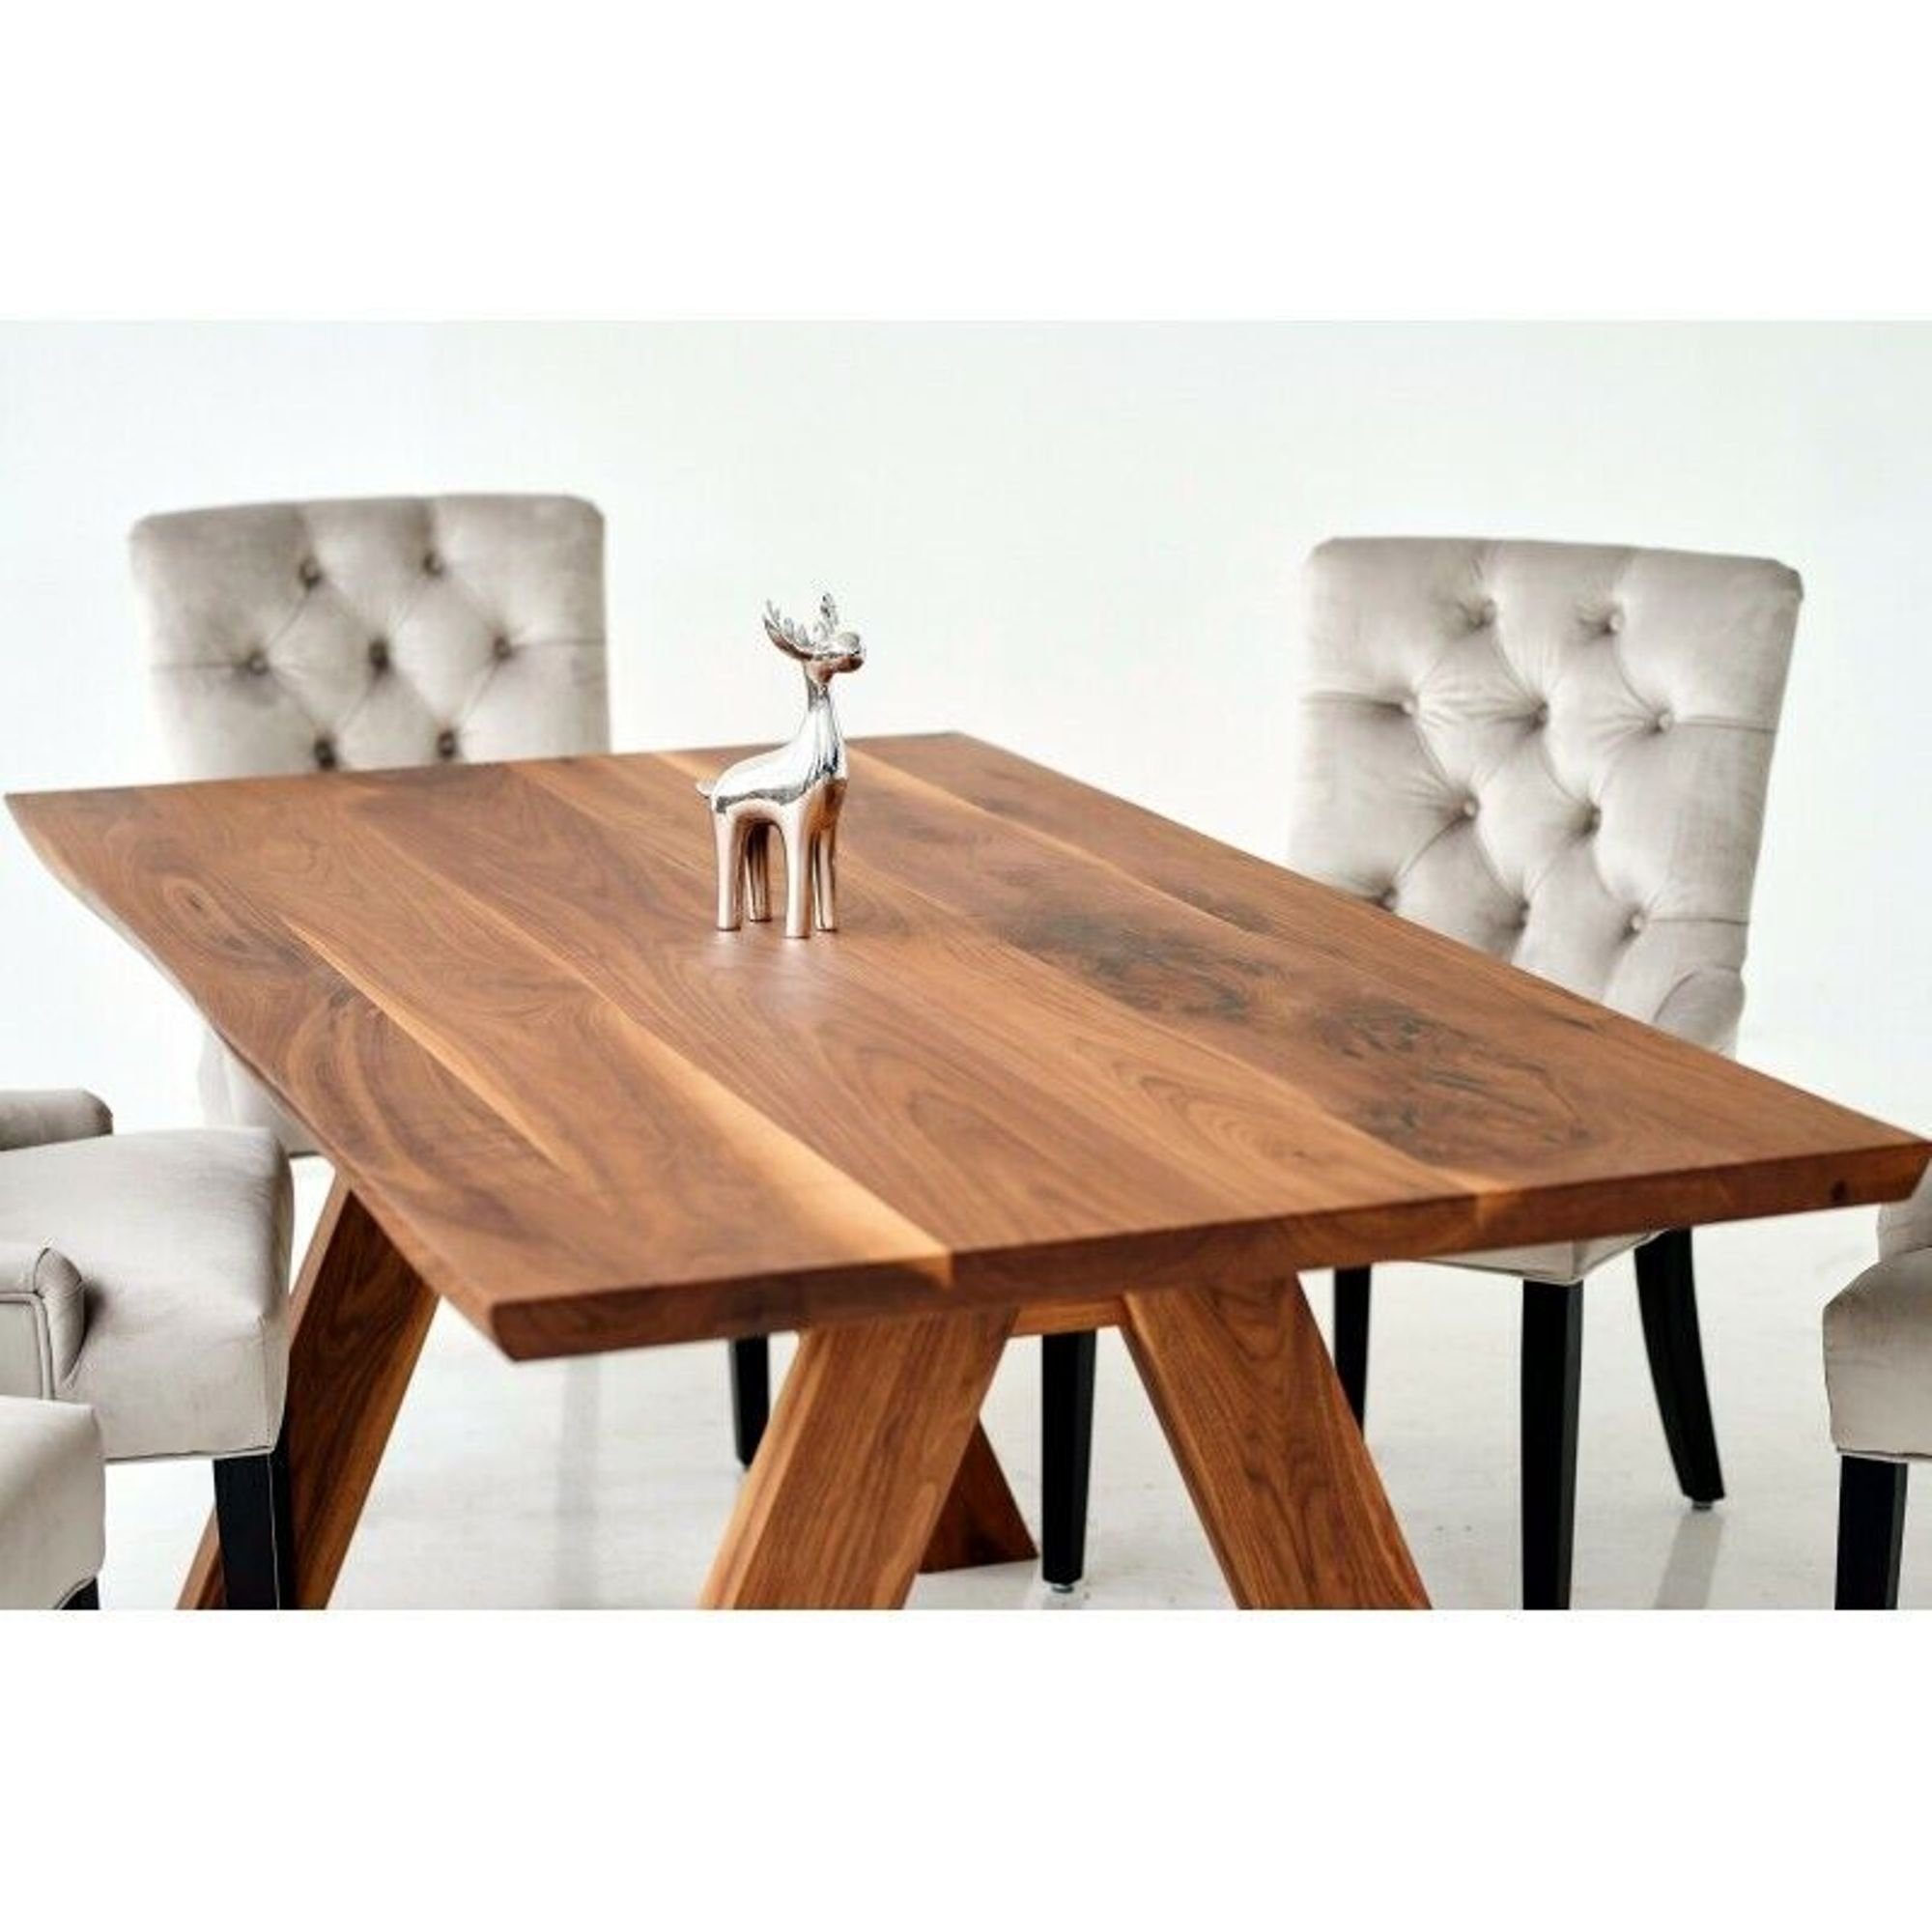 JVmoebel Sitz Lehnstühle Esszimmer + Stühle Holz Essgruppe, Gruppe Stuhl Design Chesterfield Tisch 6